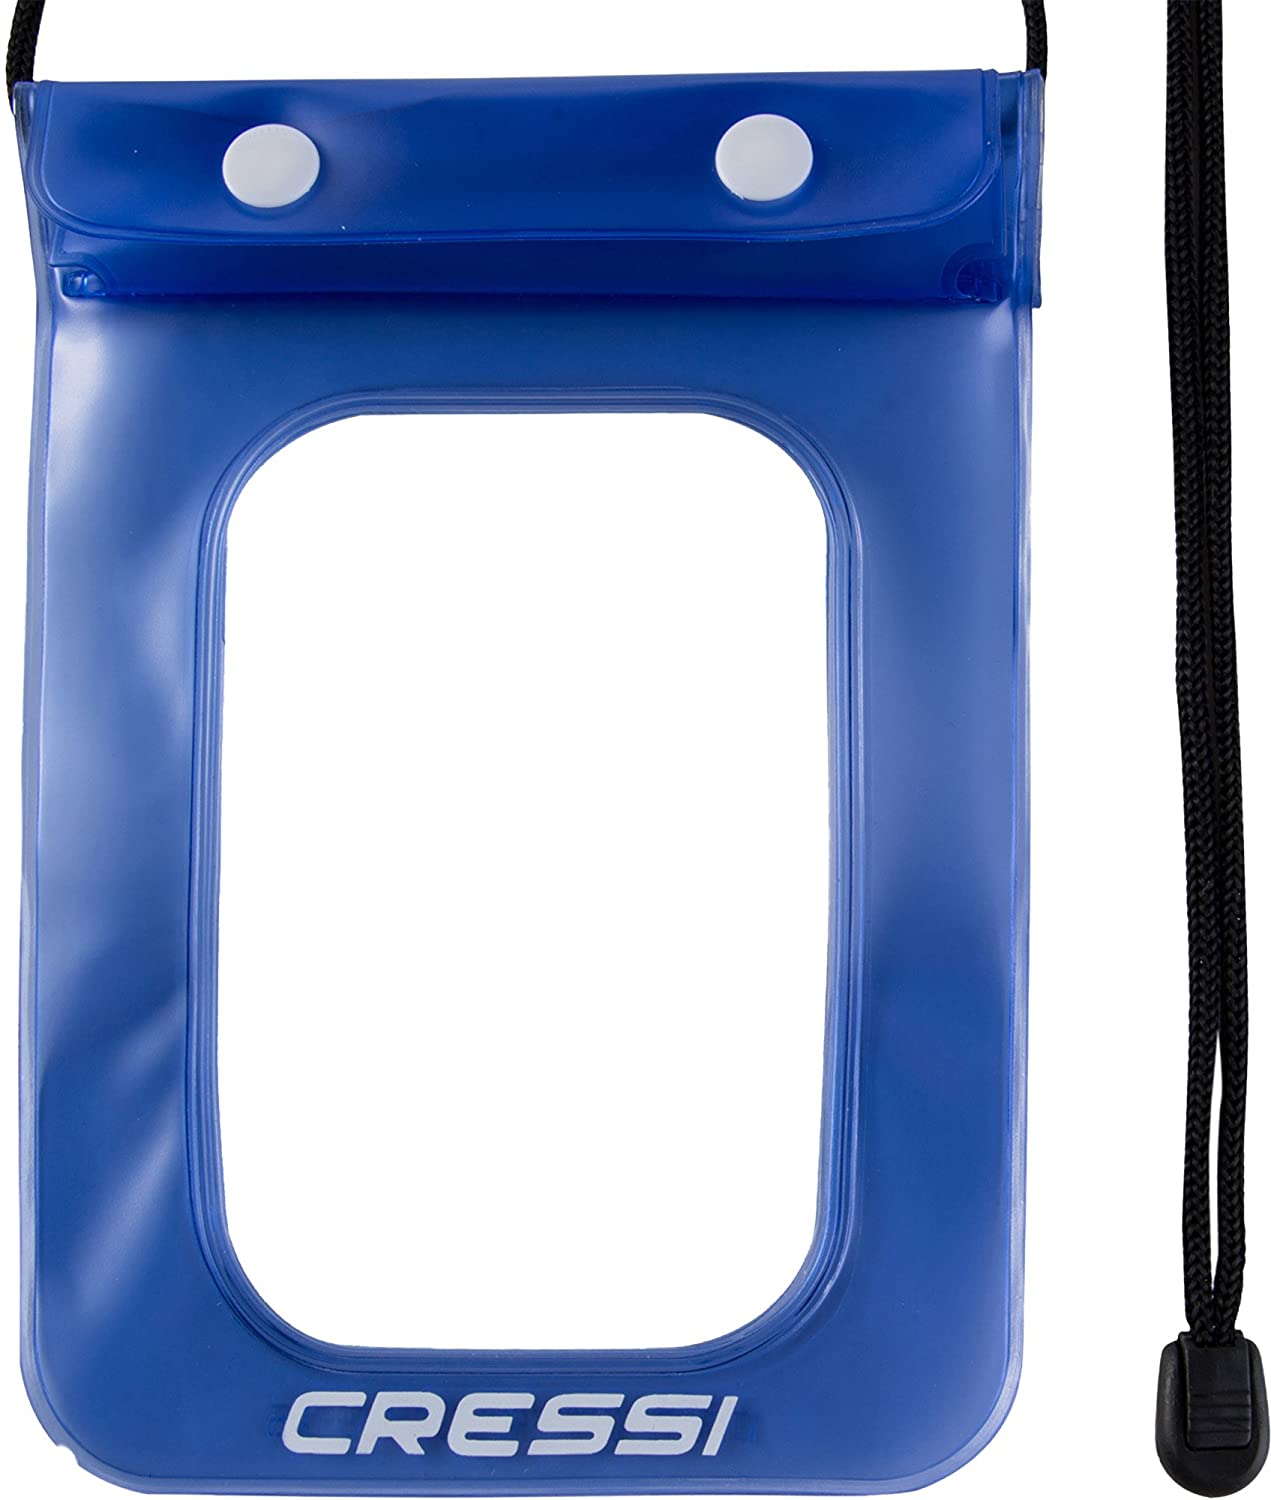 Mesure Unique Boîtier étanche pour Les Téléphones Mobiles/Smartphones Cressi Mobile Phone Waterproof Bag 